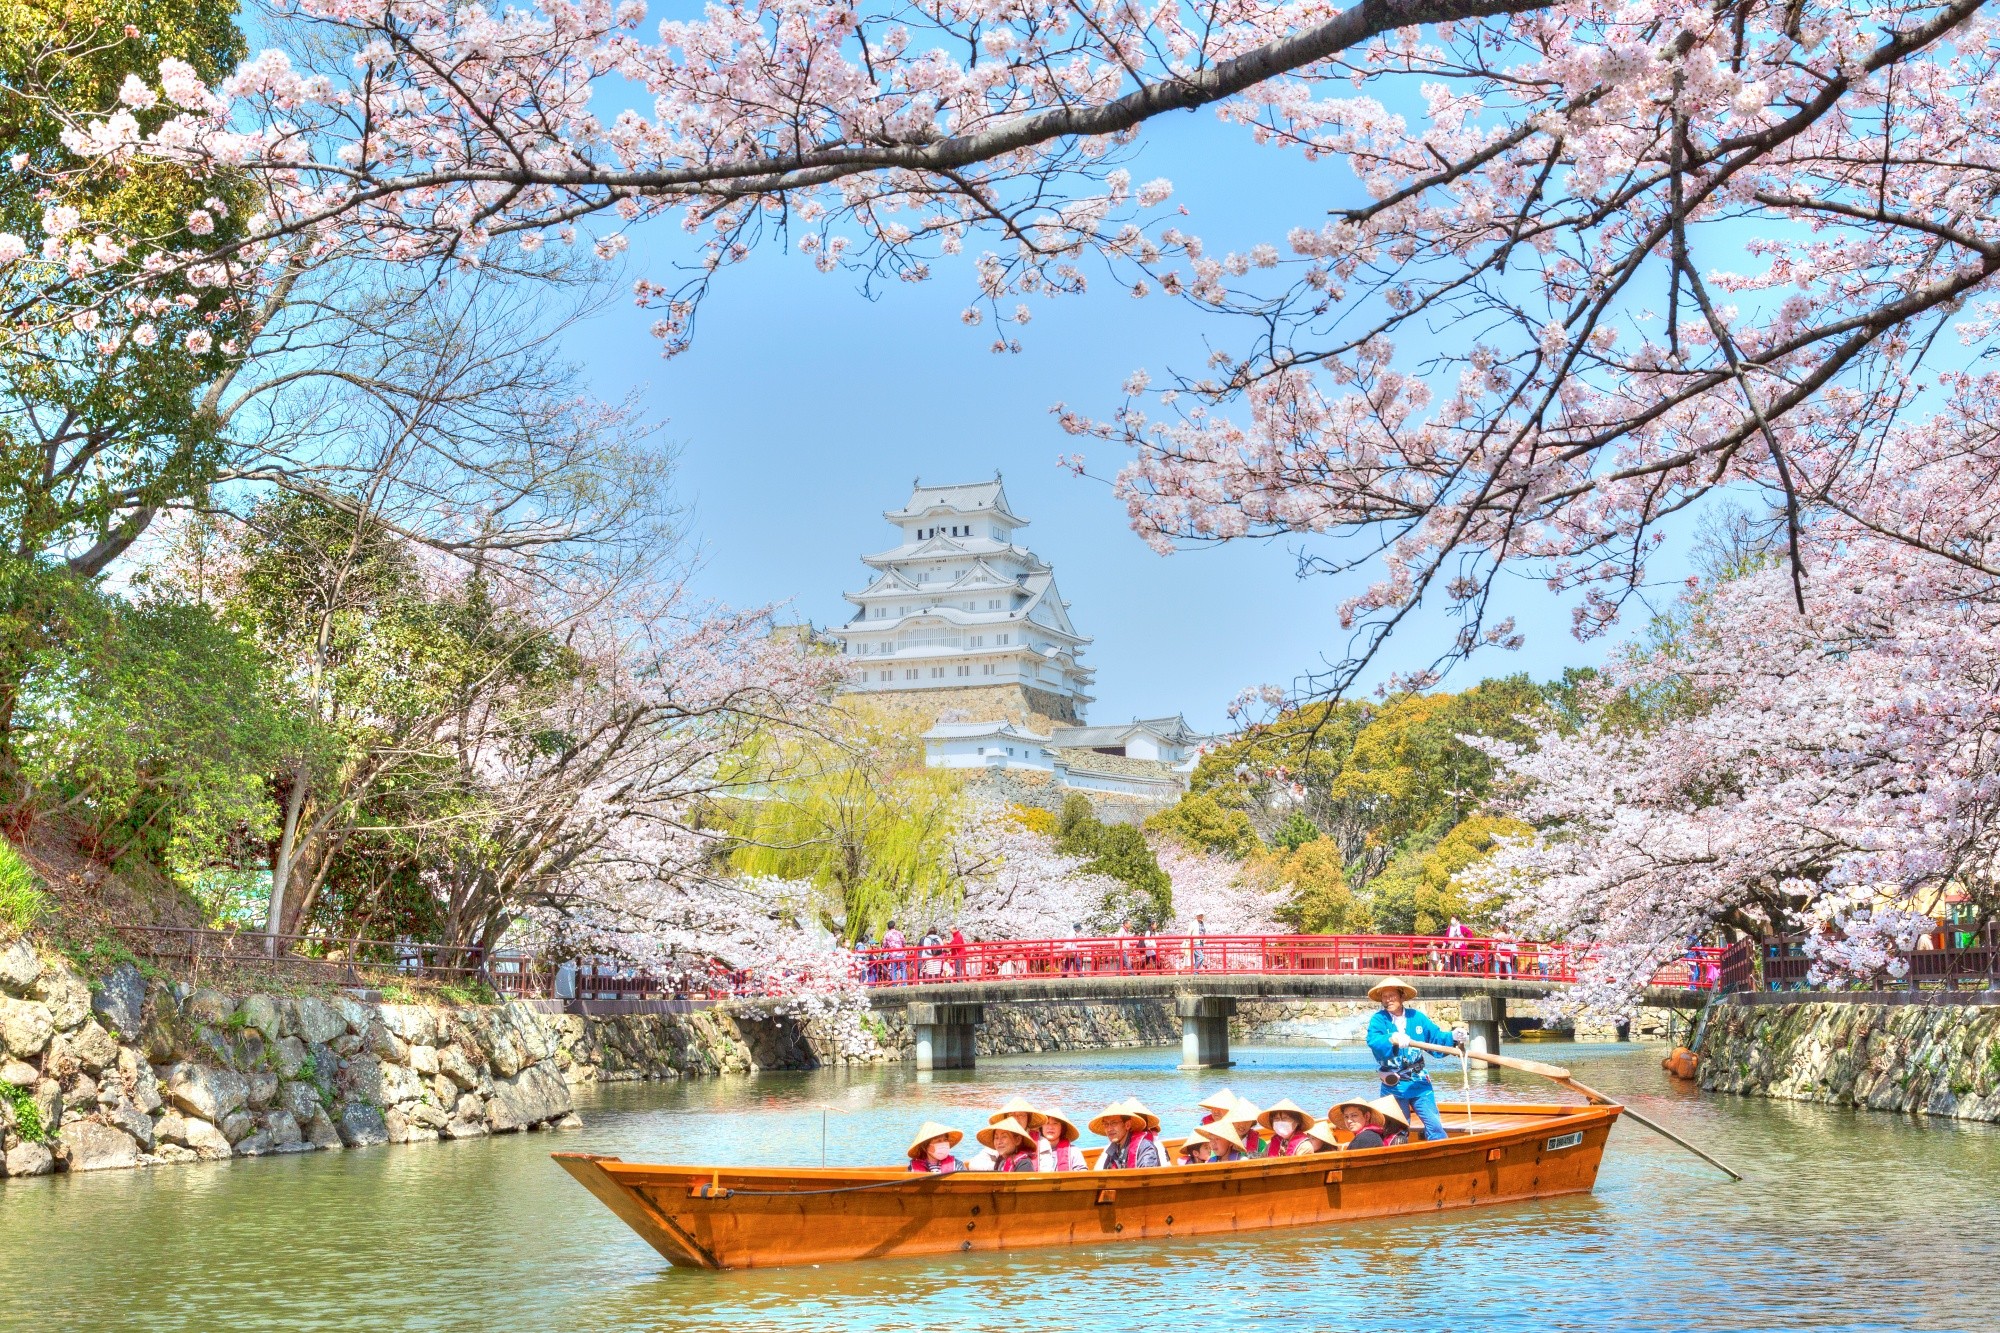 Ngắm hoa anh đào ở vùng Kansai: Vùng Kansai đã trở thành điểm đến của rất nhiều du khách để thưởng ngoạn vẻ đẹp hoa anh đào đỏ rực này. Hãy xem hình ảnh và trải nghiệm những cảm xúc tuyệt vời mà hoa anh đào mang lại.